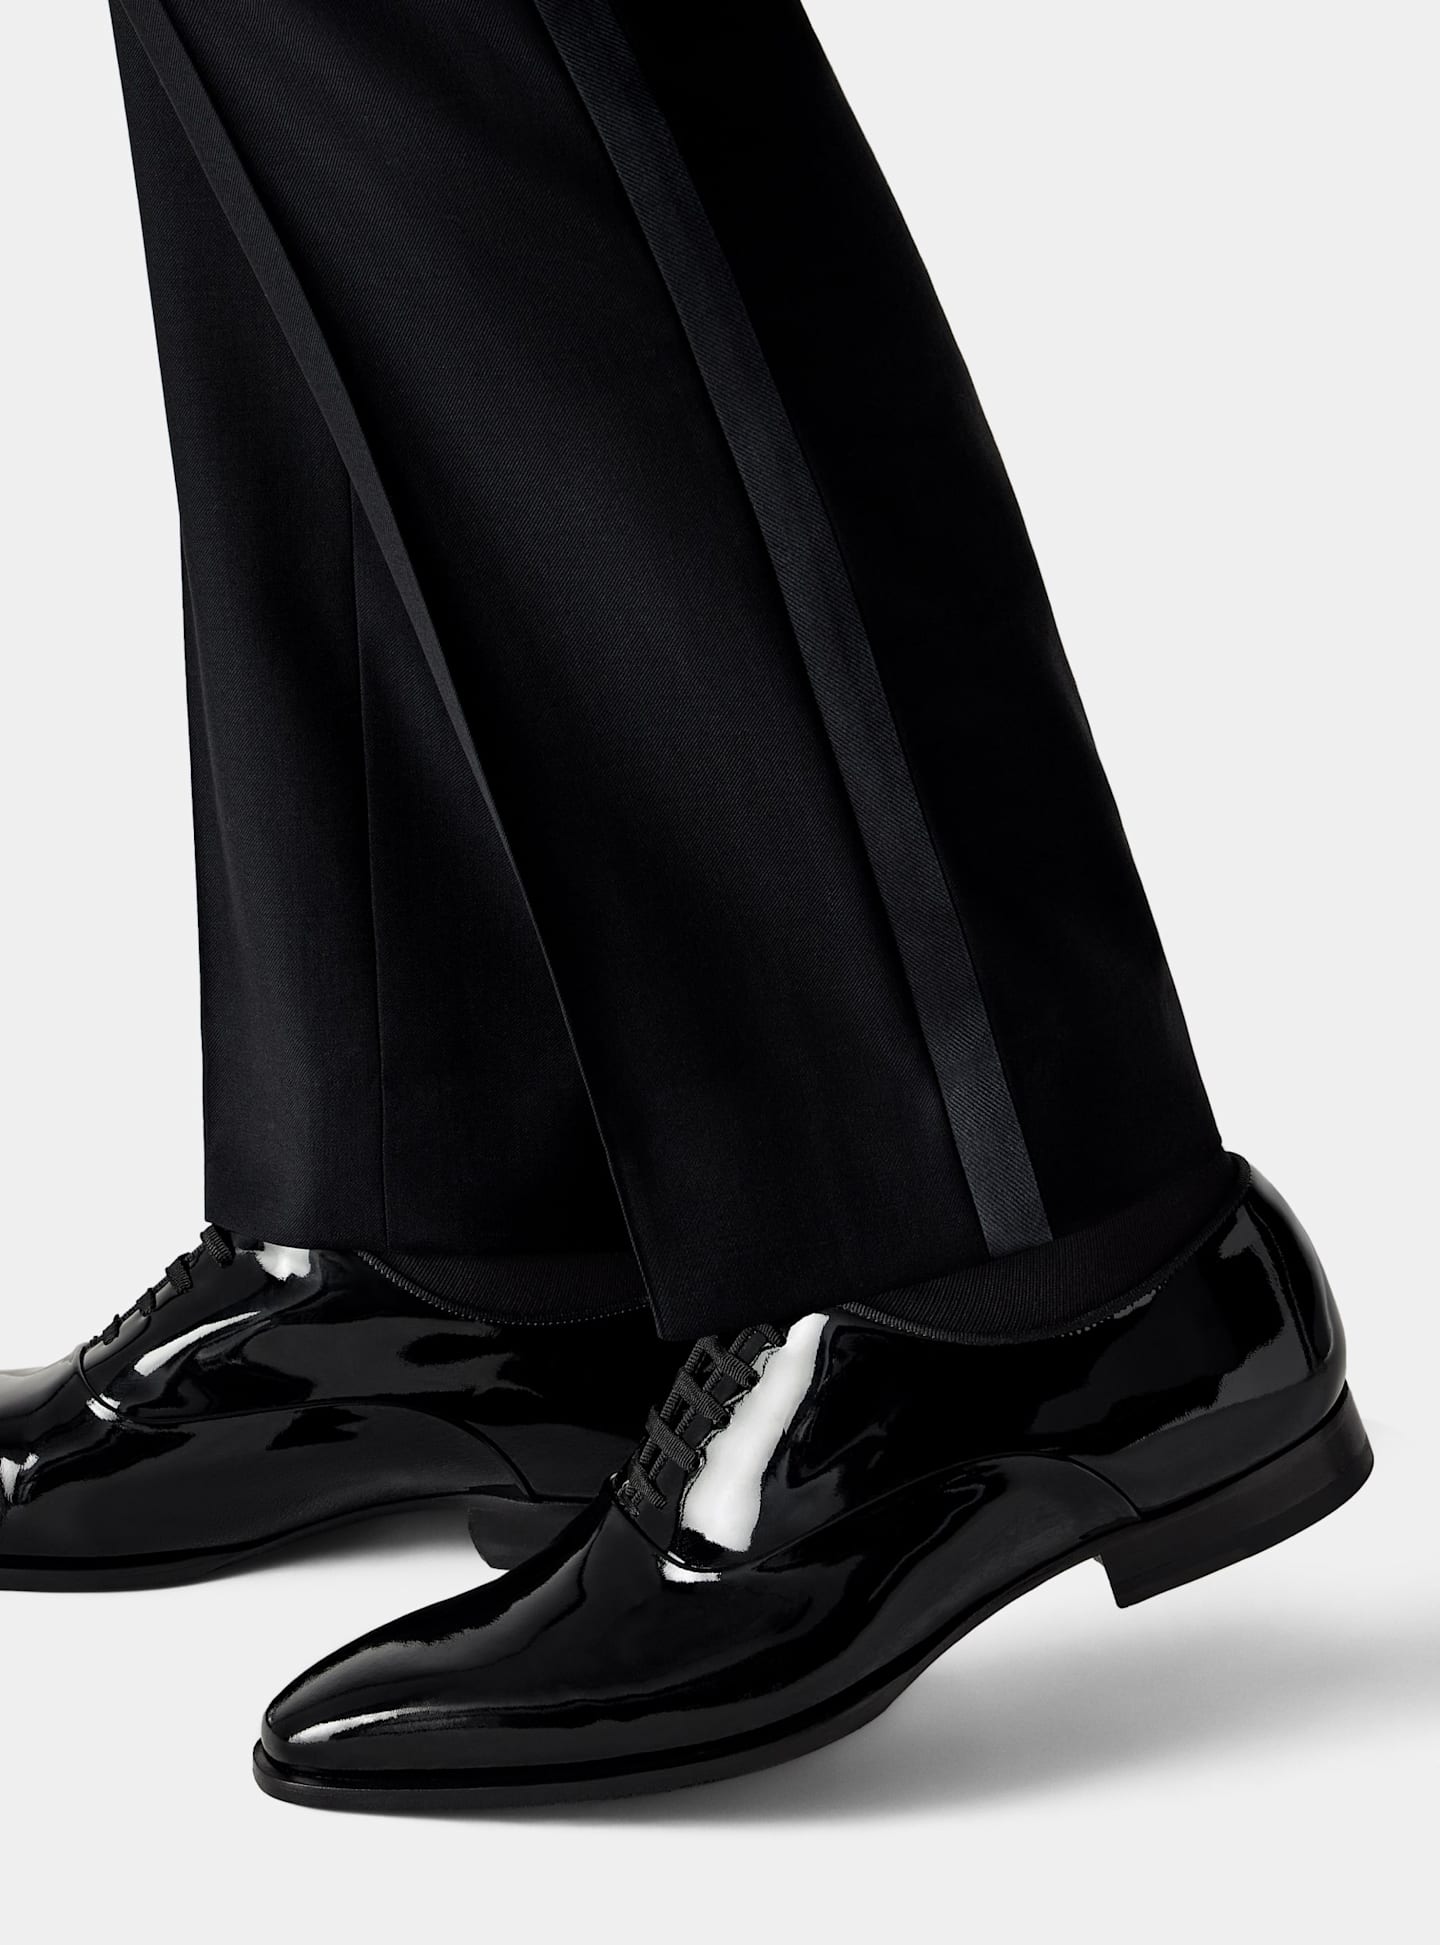 Ansicht einer Smokinghose mit schwarzen Schnürschuhen aus Lackleder.